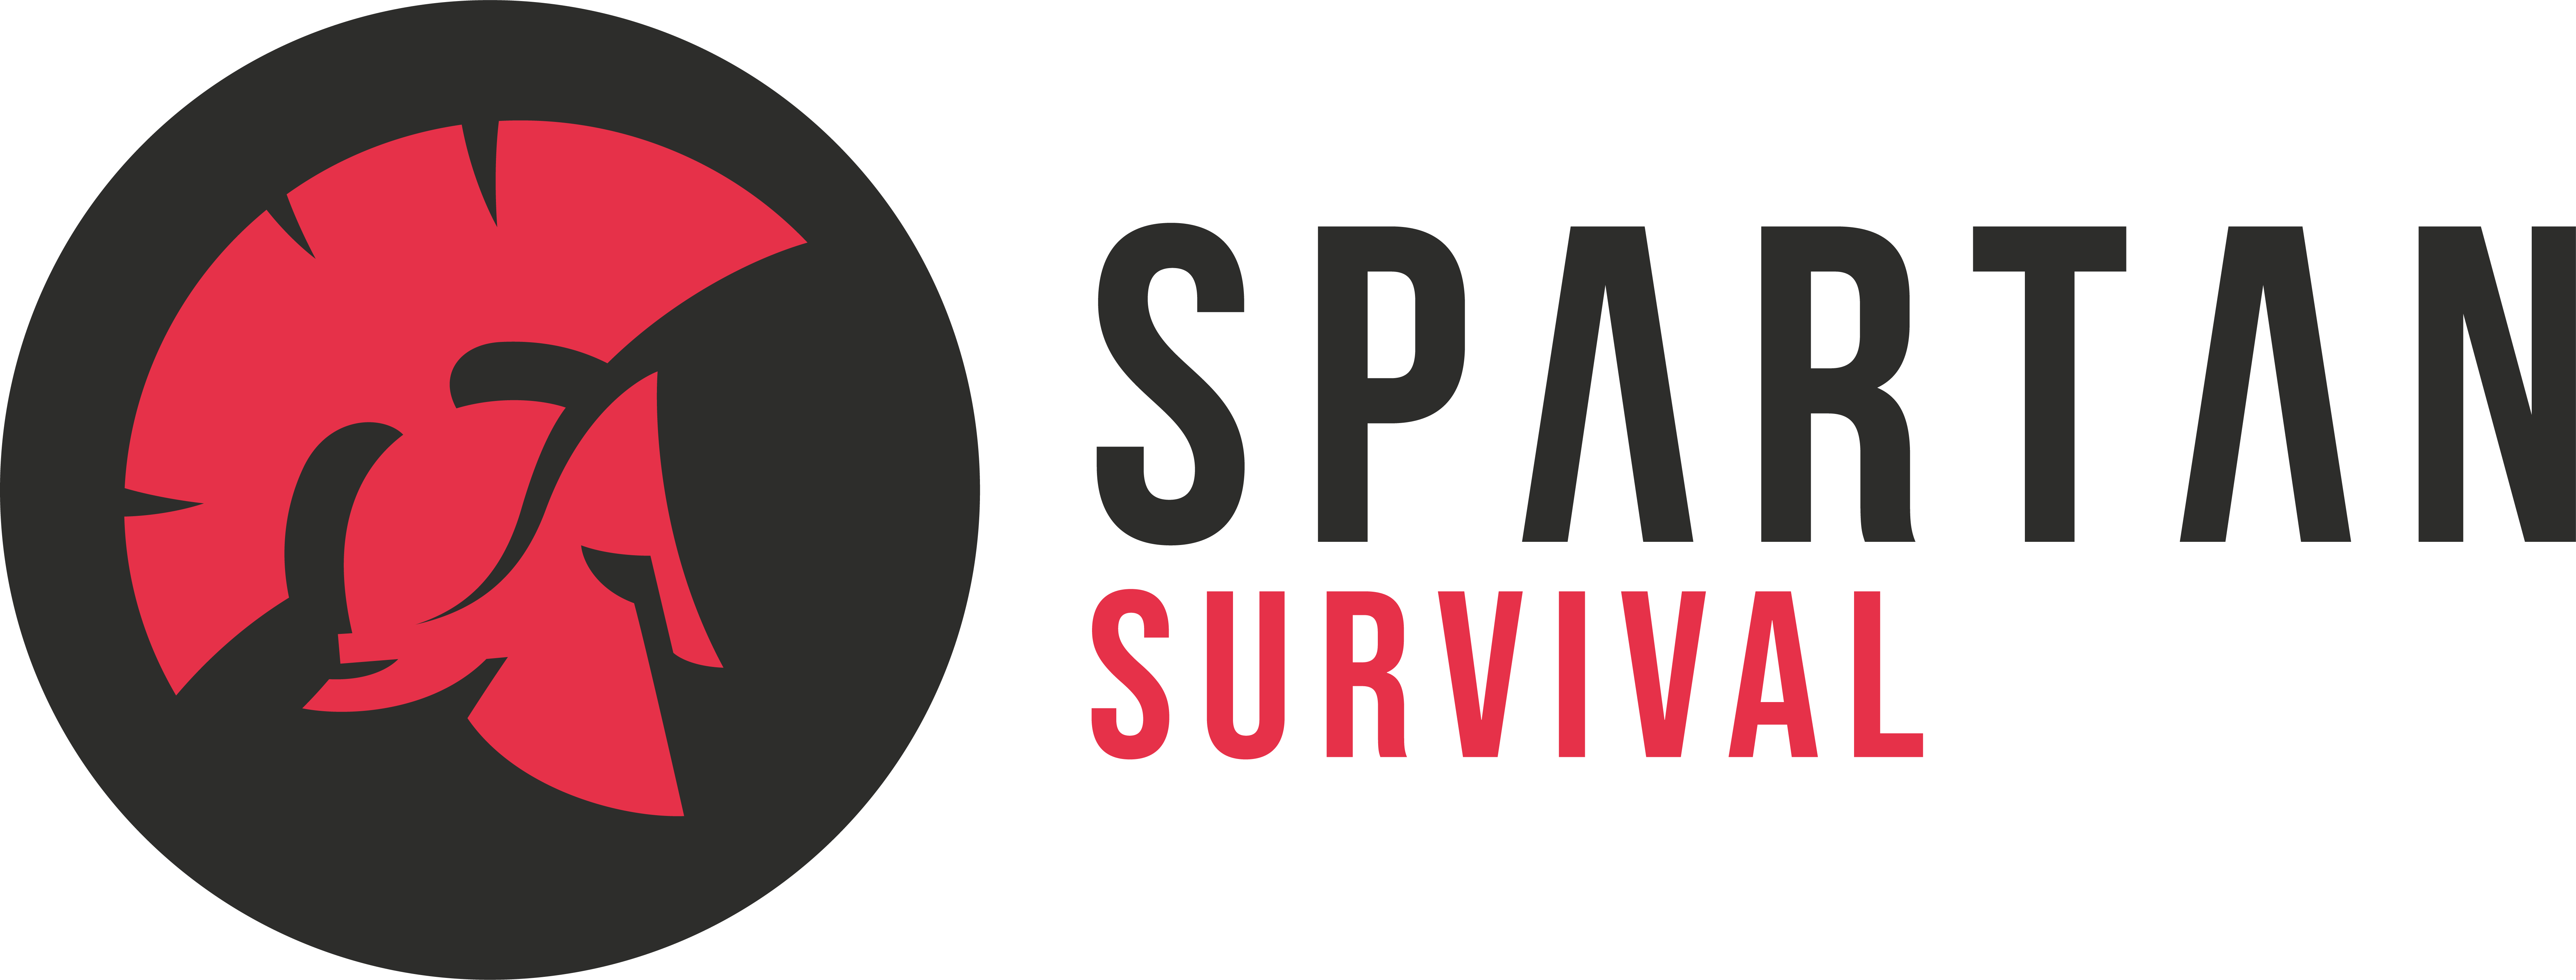 Spartan Survival